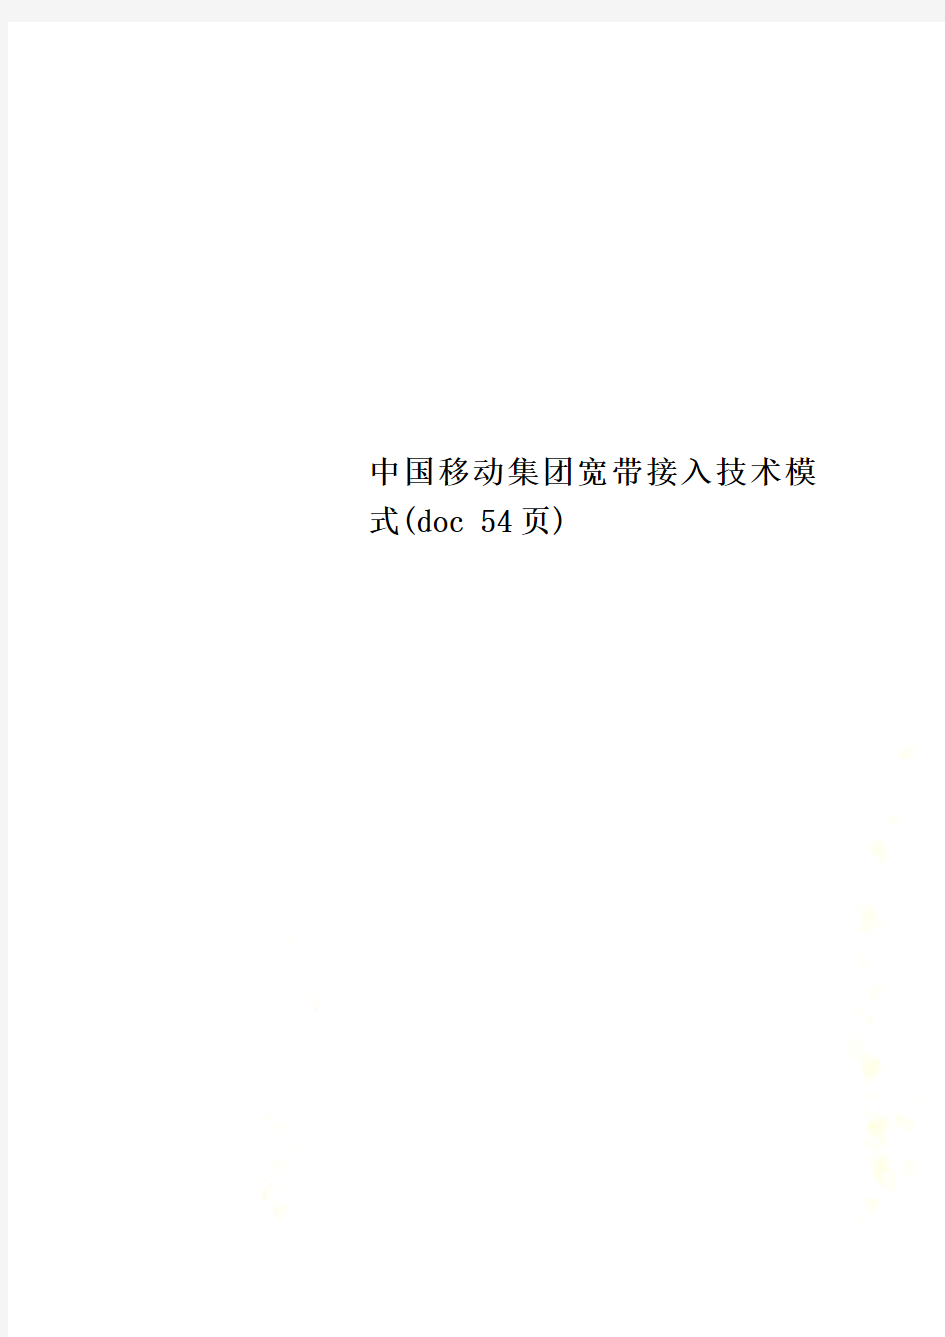 中国移动集团宽带接入技术模式(doc 54页)